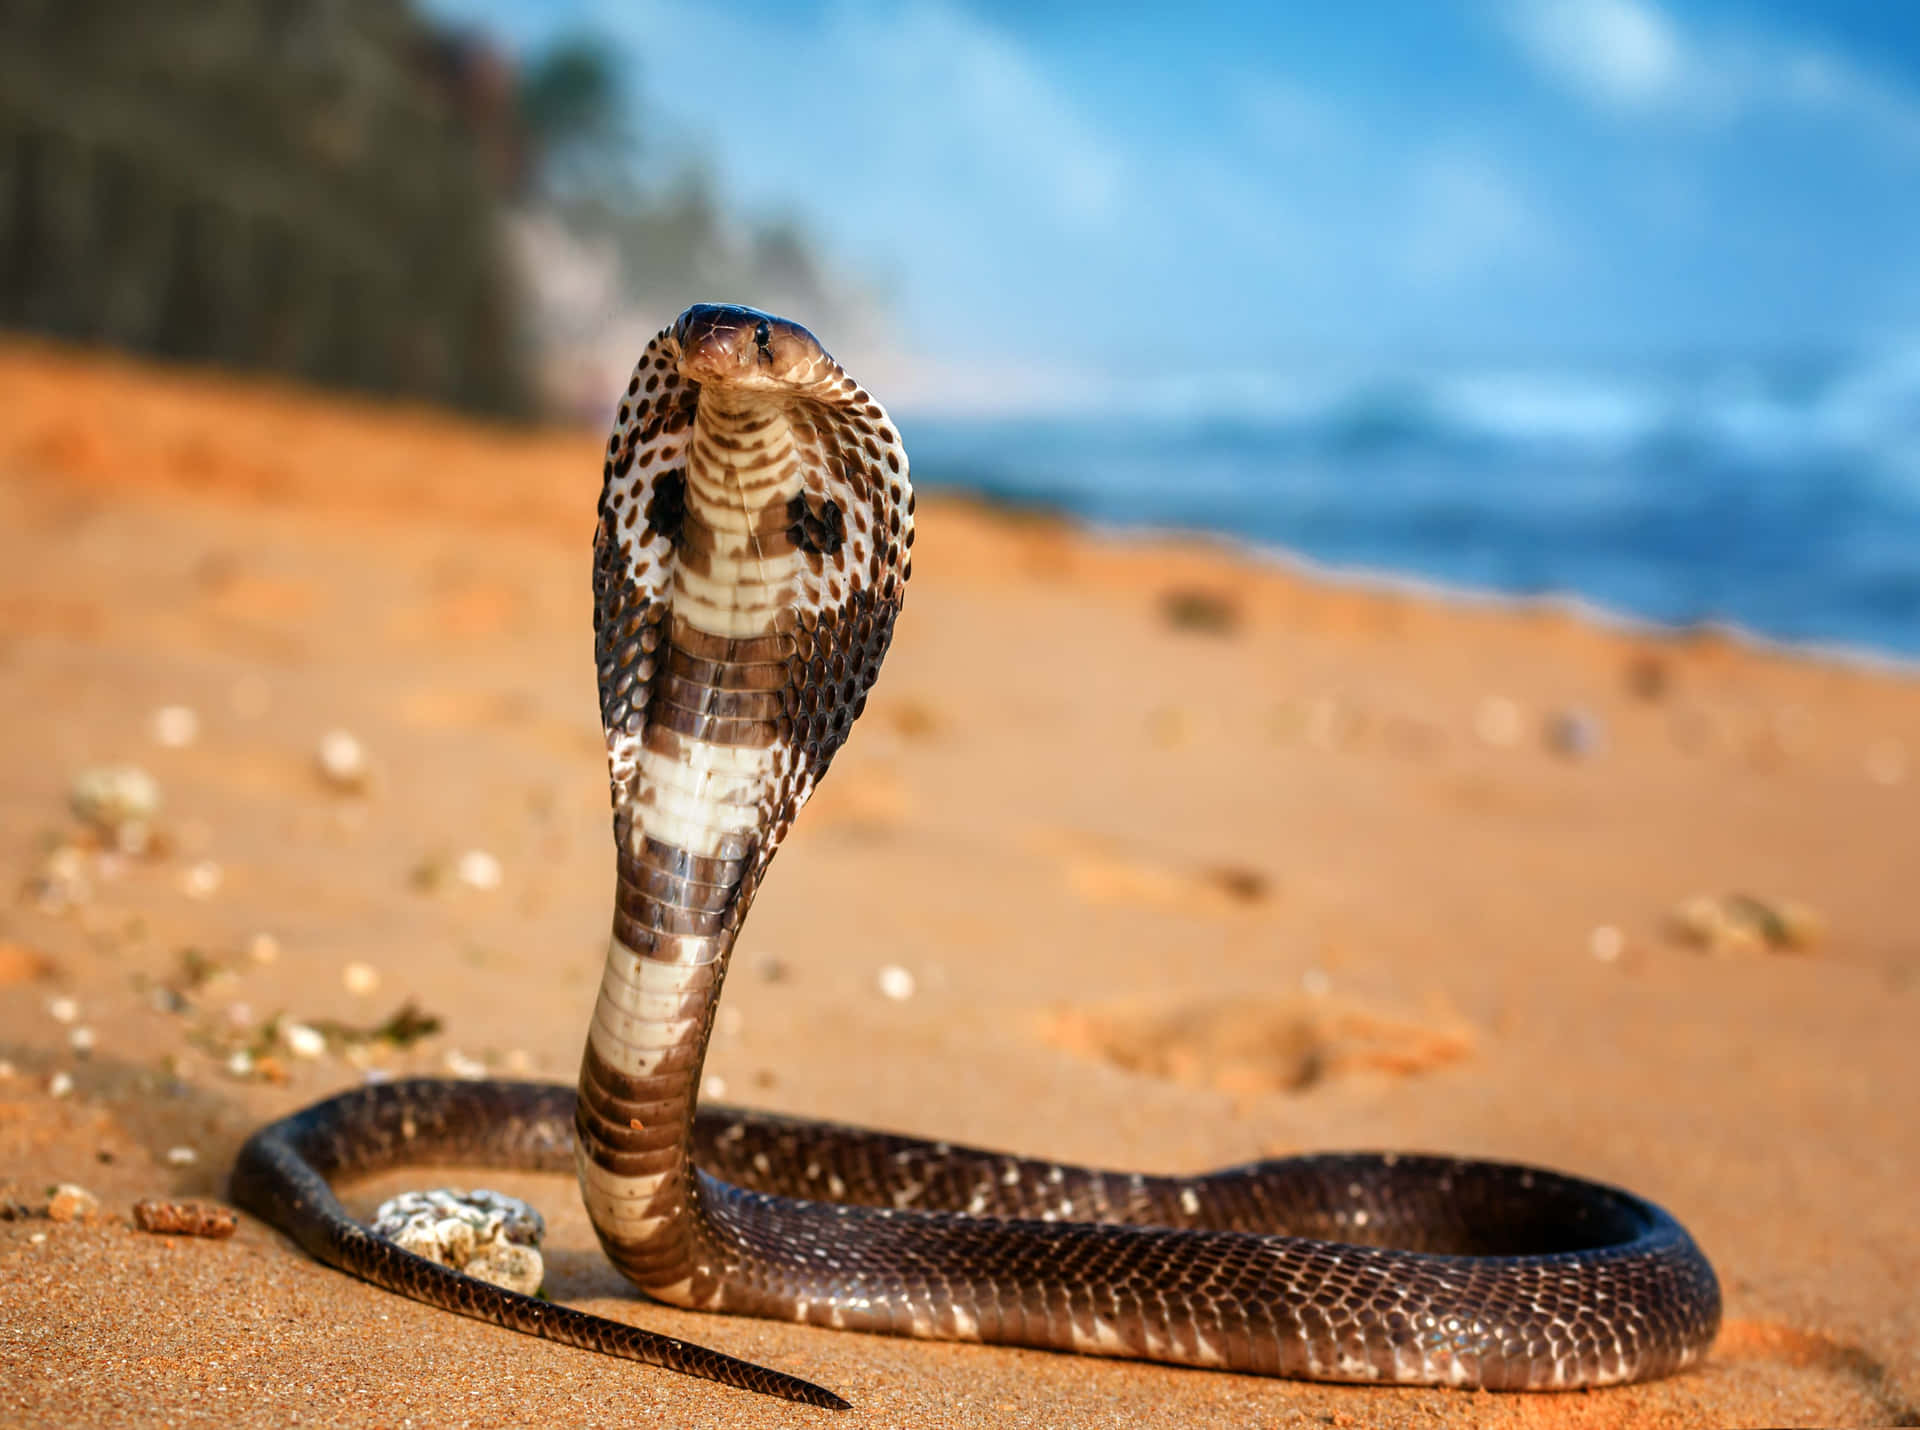 A menacing King Cobra uncoils in its native habitat